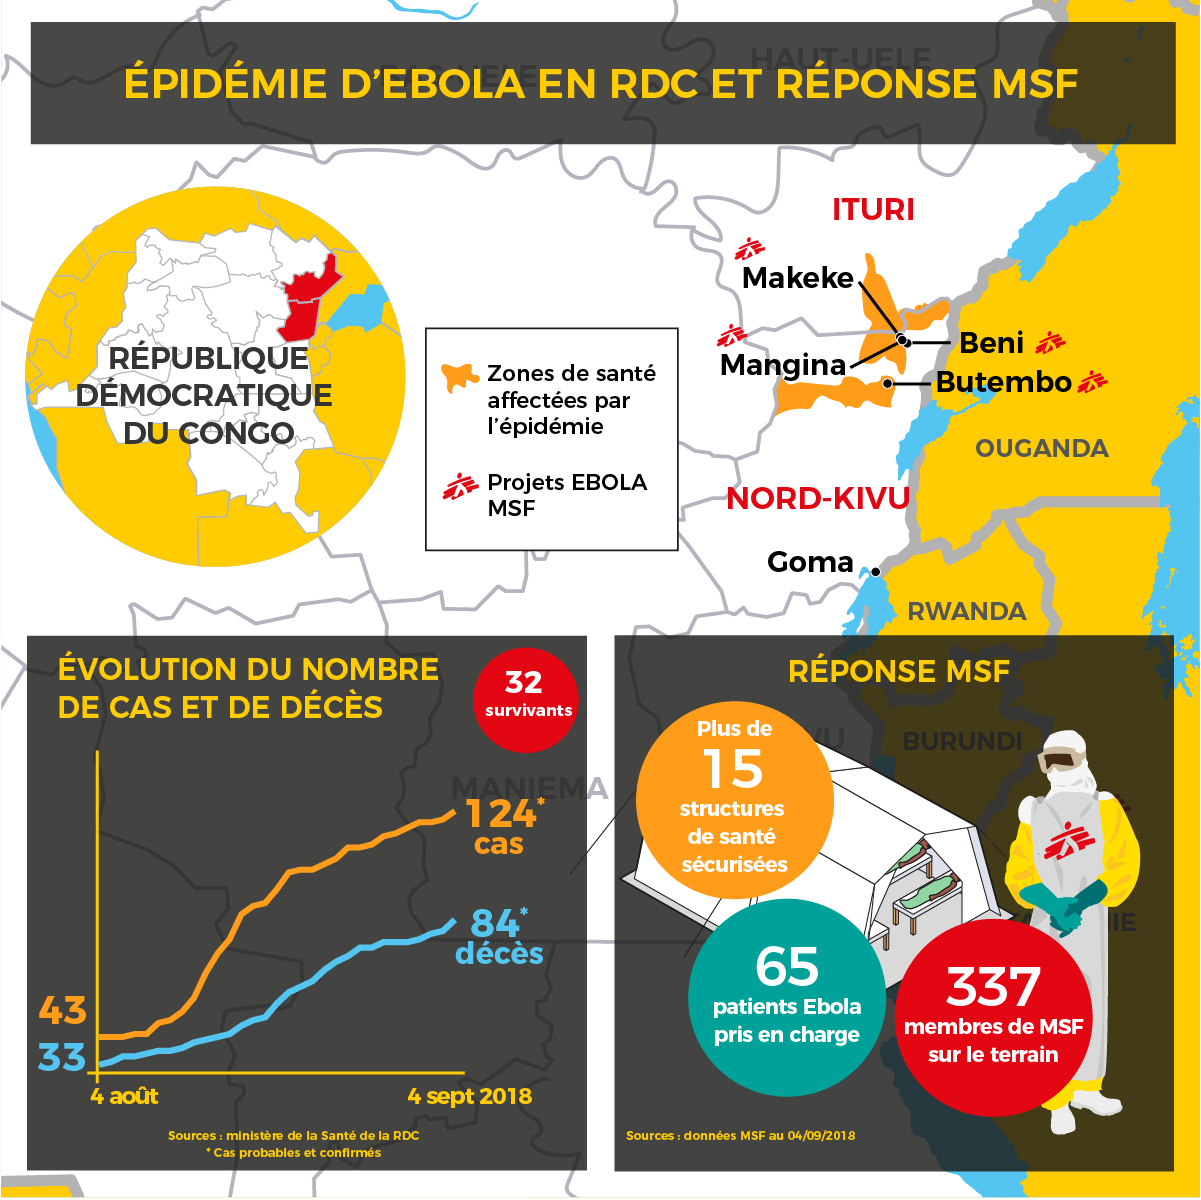 Réponse MSF à l'épidémie d'Ebola au Nord-Kivu en RDC. Août 2018